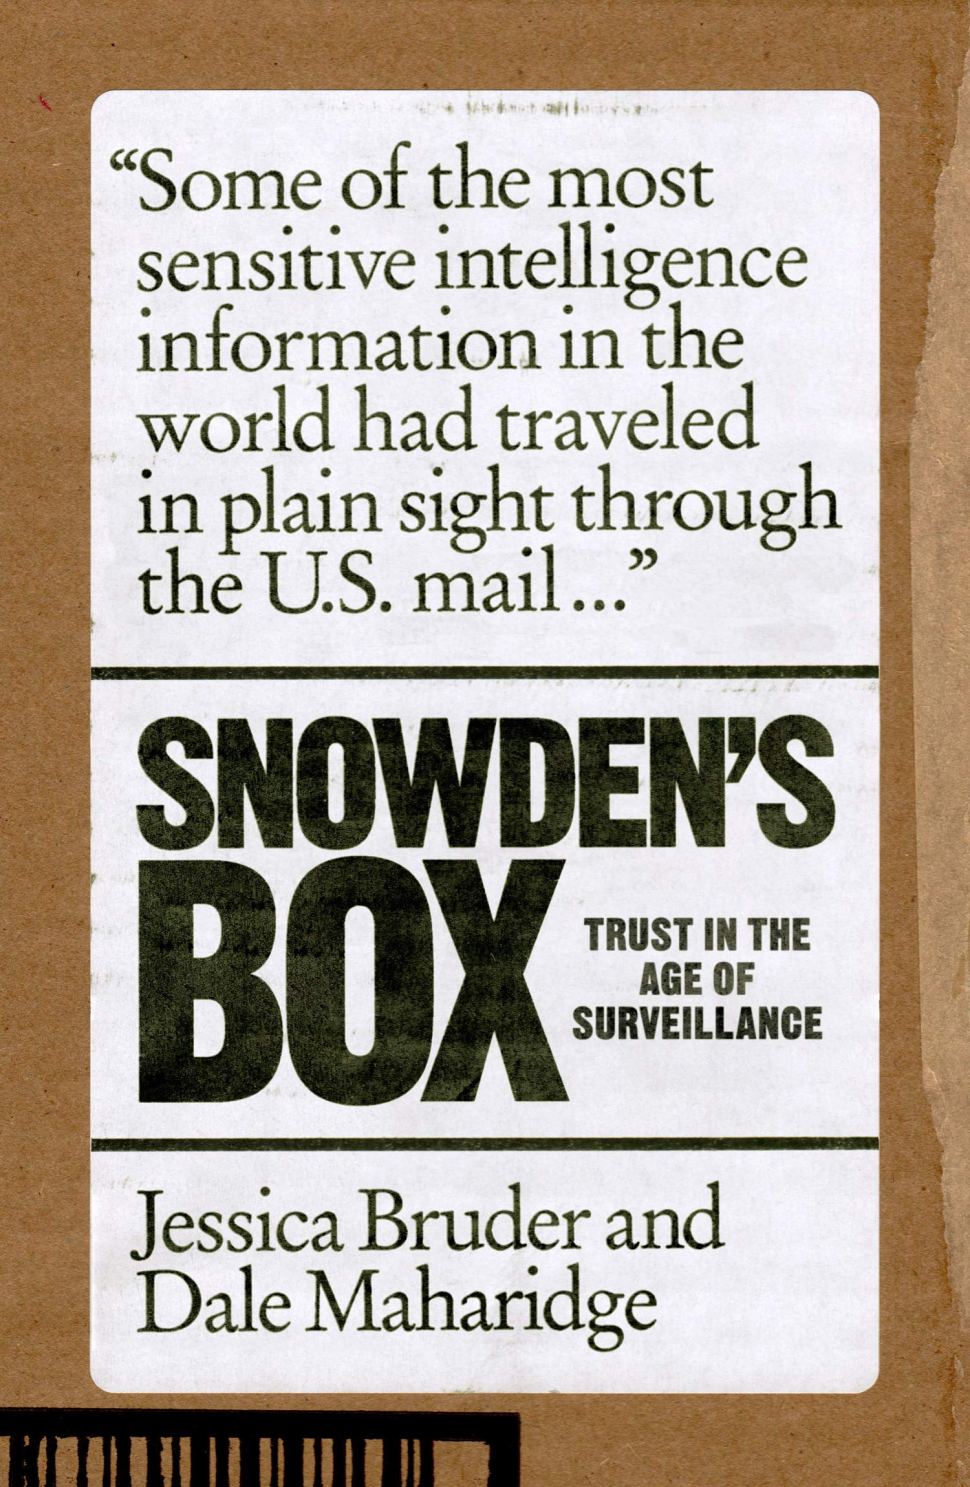 Jessica Bruder, Dale Maharidge: Snowden's Box (2020, Verso Books)